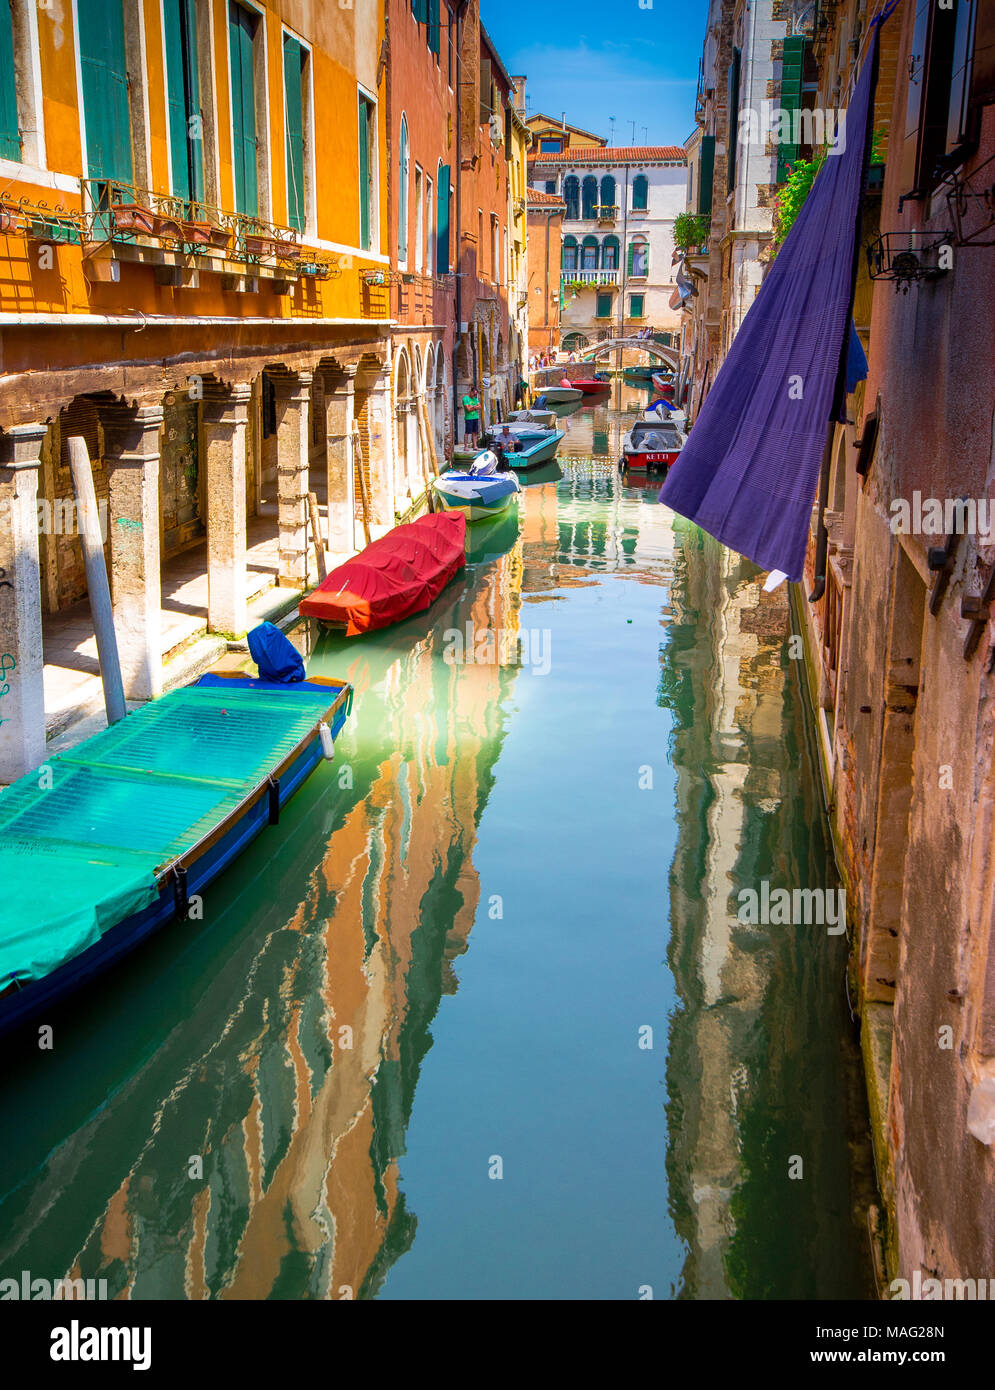 Vue d'un paysage pittoresque Canal, Venice, Italie Banque D'Images